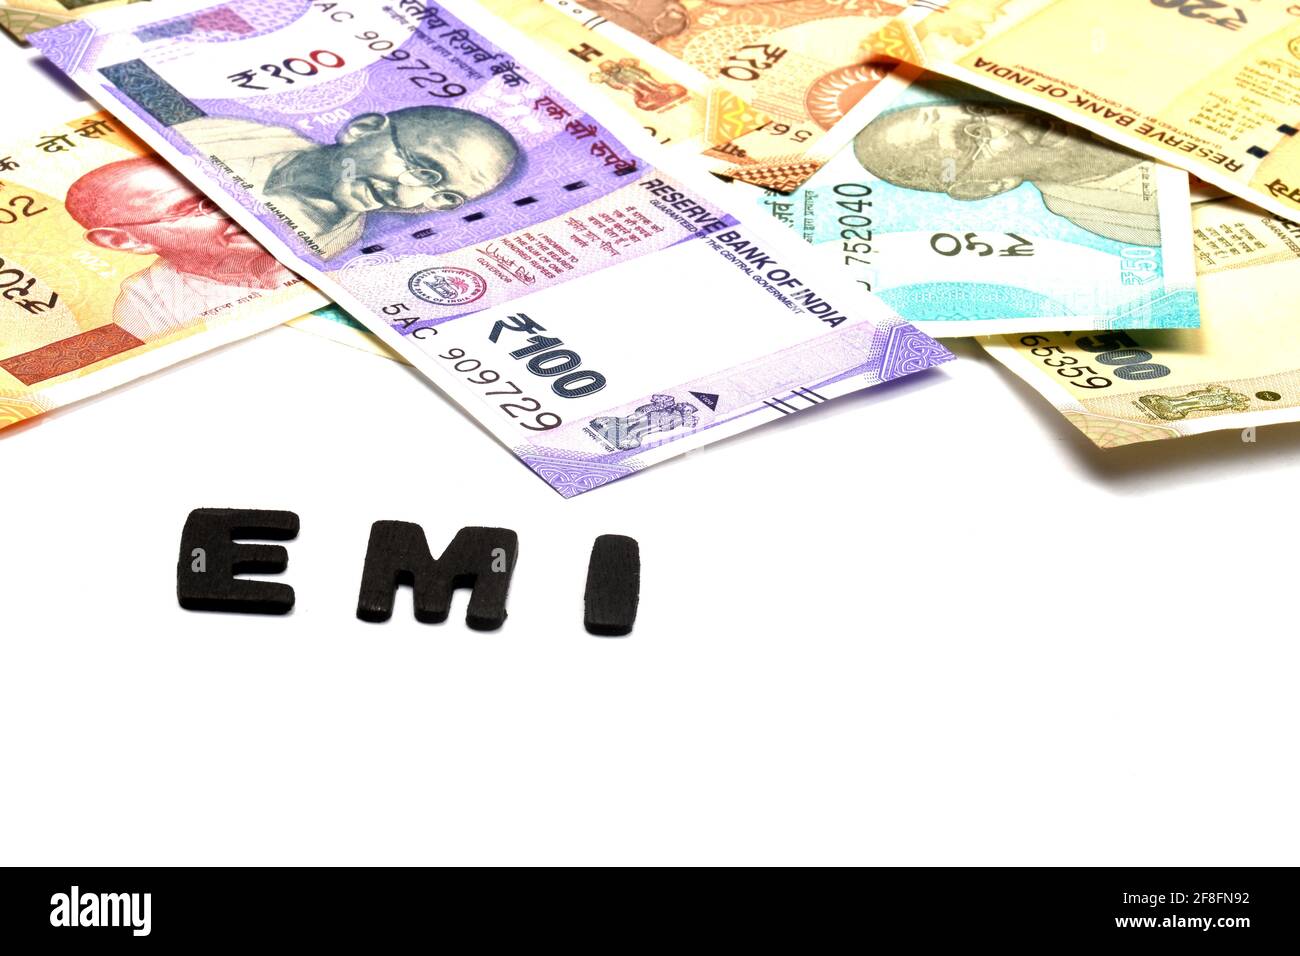 Concetto EMI, alfabeto EMI su base monetaria, valuta indiana, rupia, rupia indiana, moneta indiana, Affari, finanza, investimenti, Foto Stock